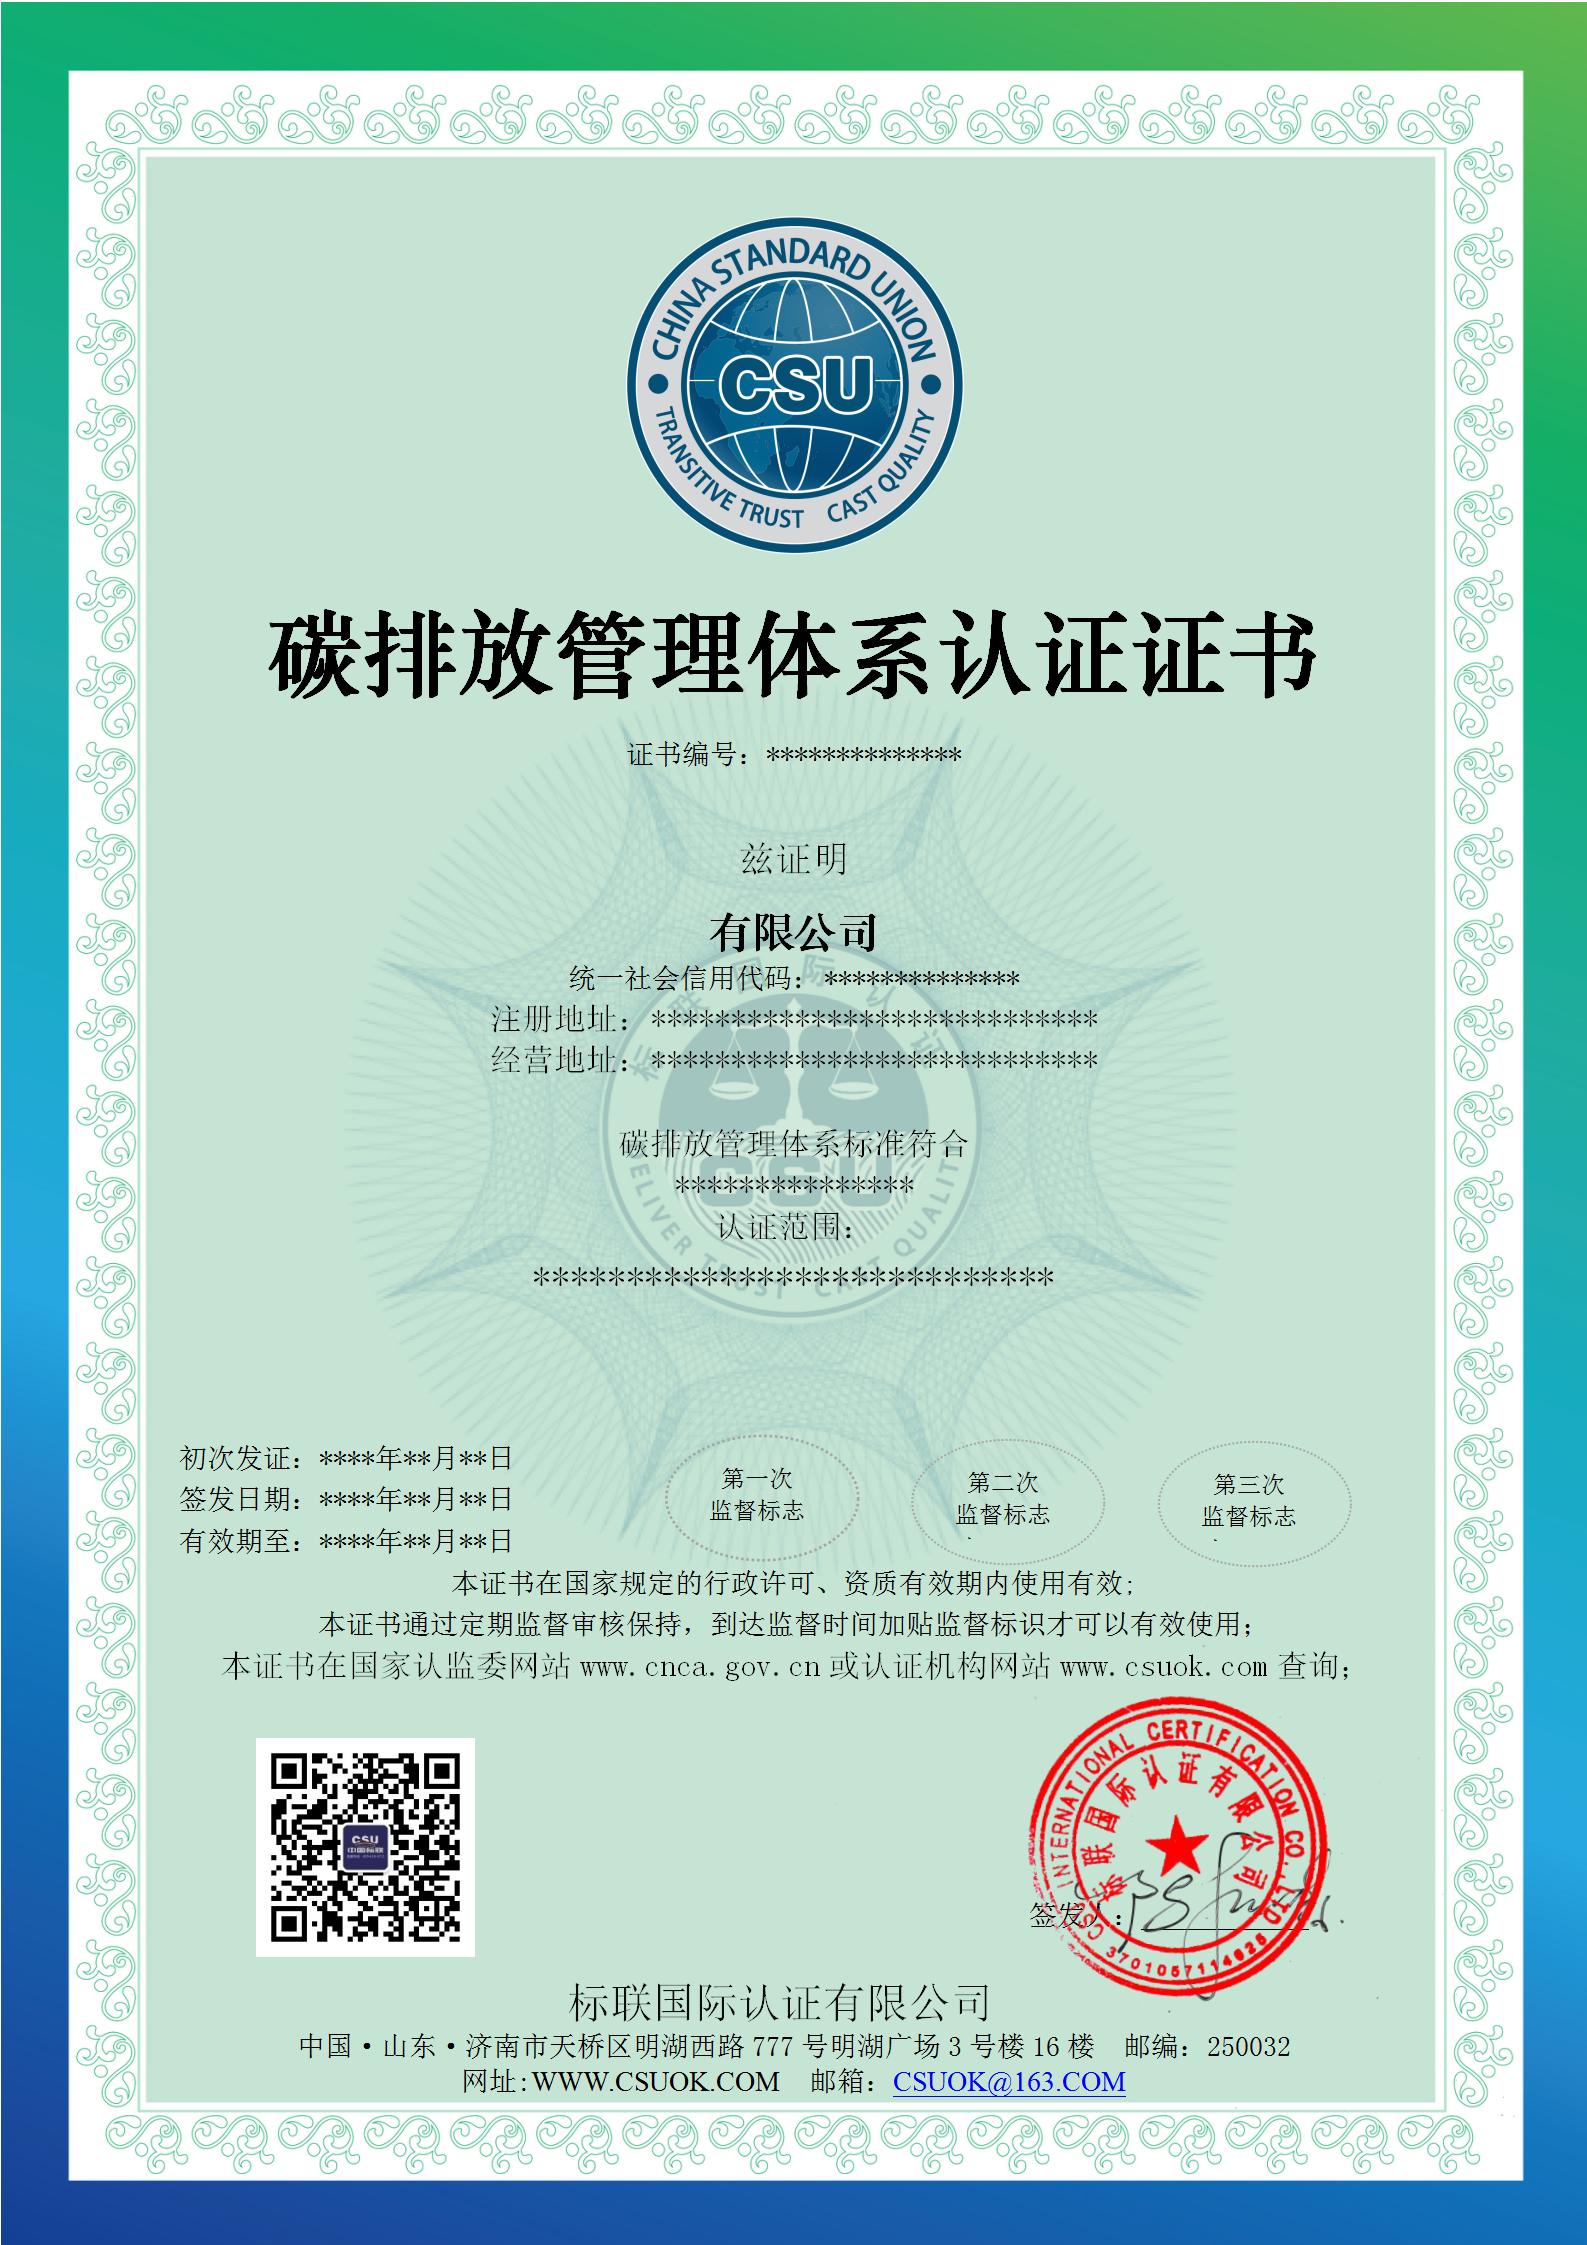 碳排放管理体系认证证书-模板_01.jpg